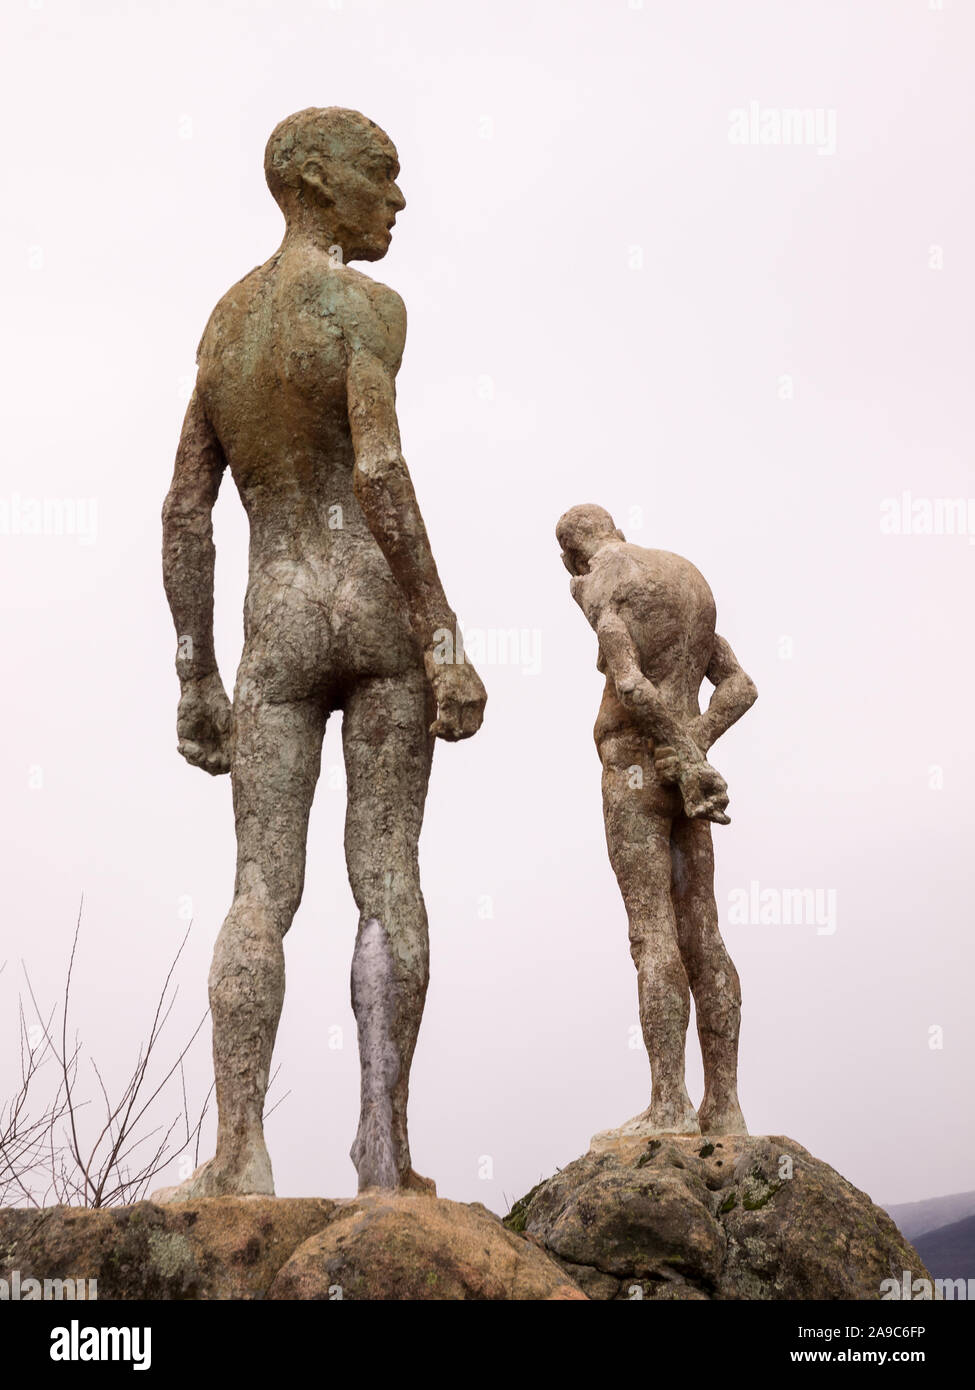 El Torno, Caceres, Spanien; Januar, 12, 2018: Portrait von Statuen der Denkmal für die Vergessenen des Spanischen Bürgerkriegs. Jerte Tal. Stockfoto